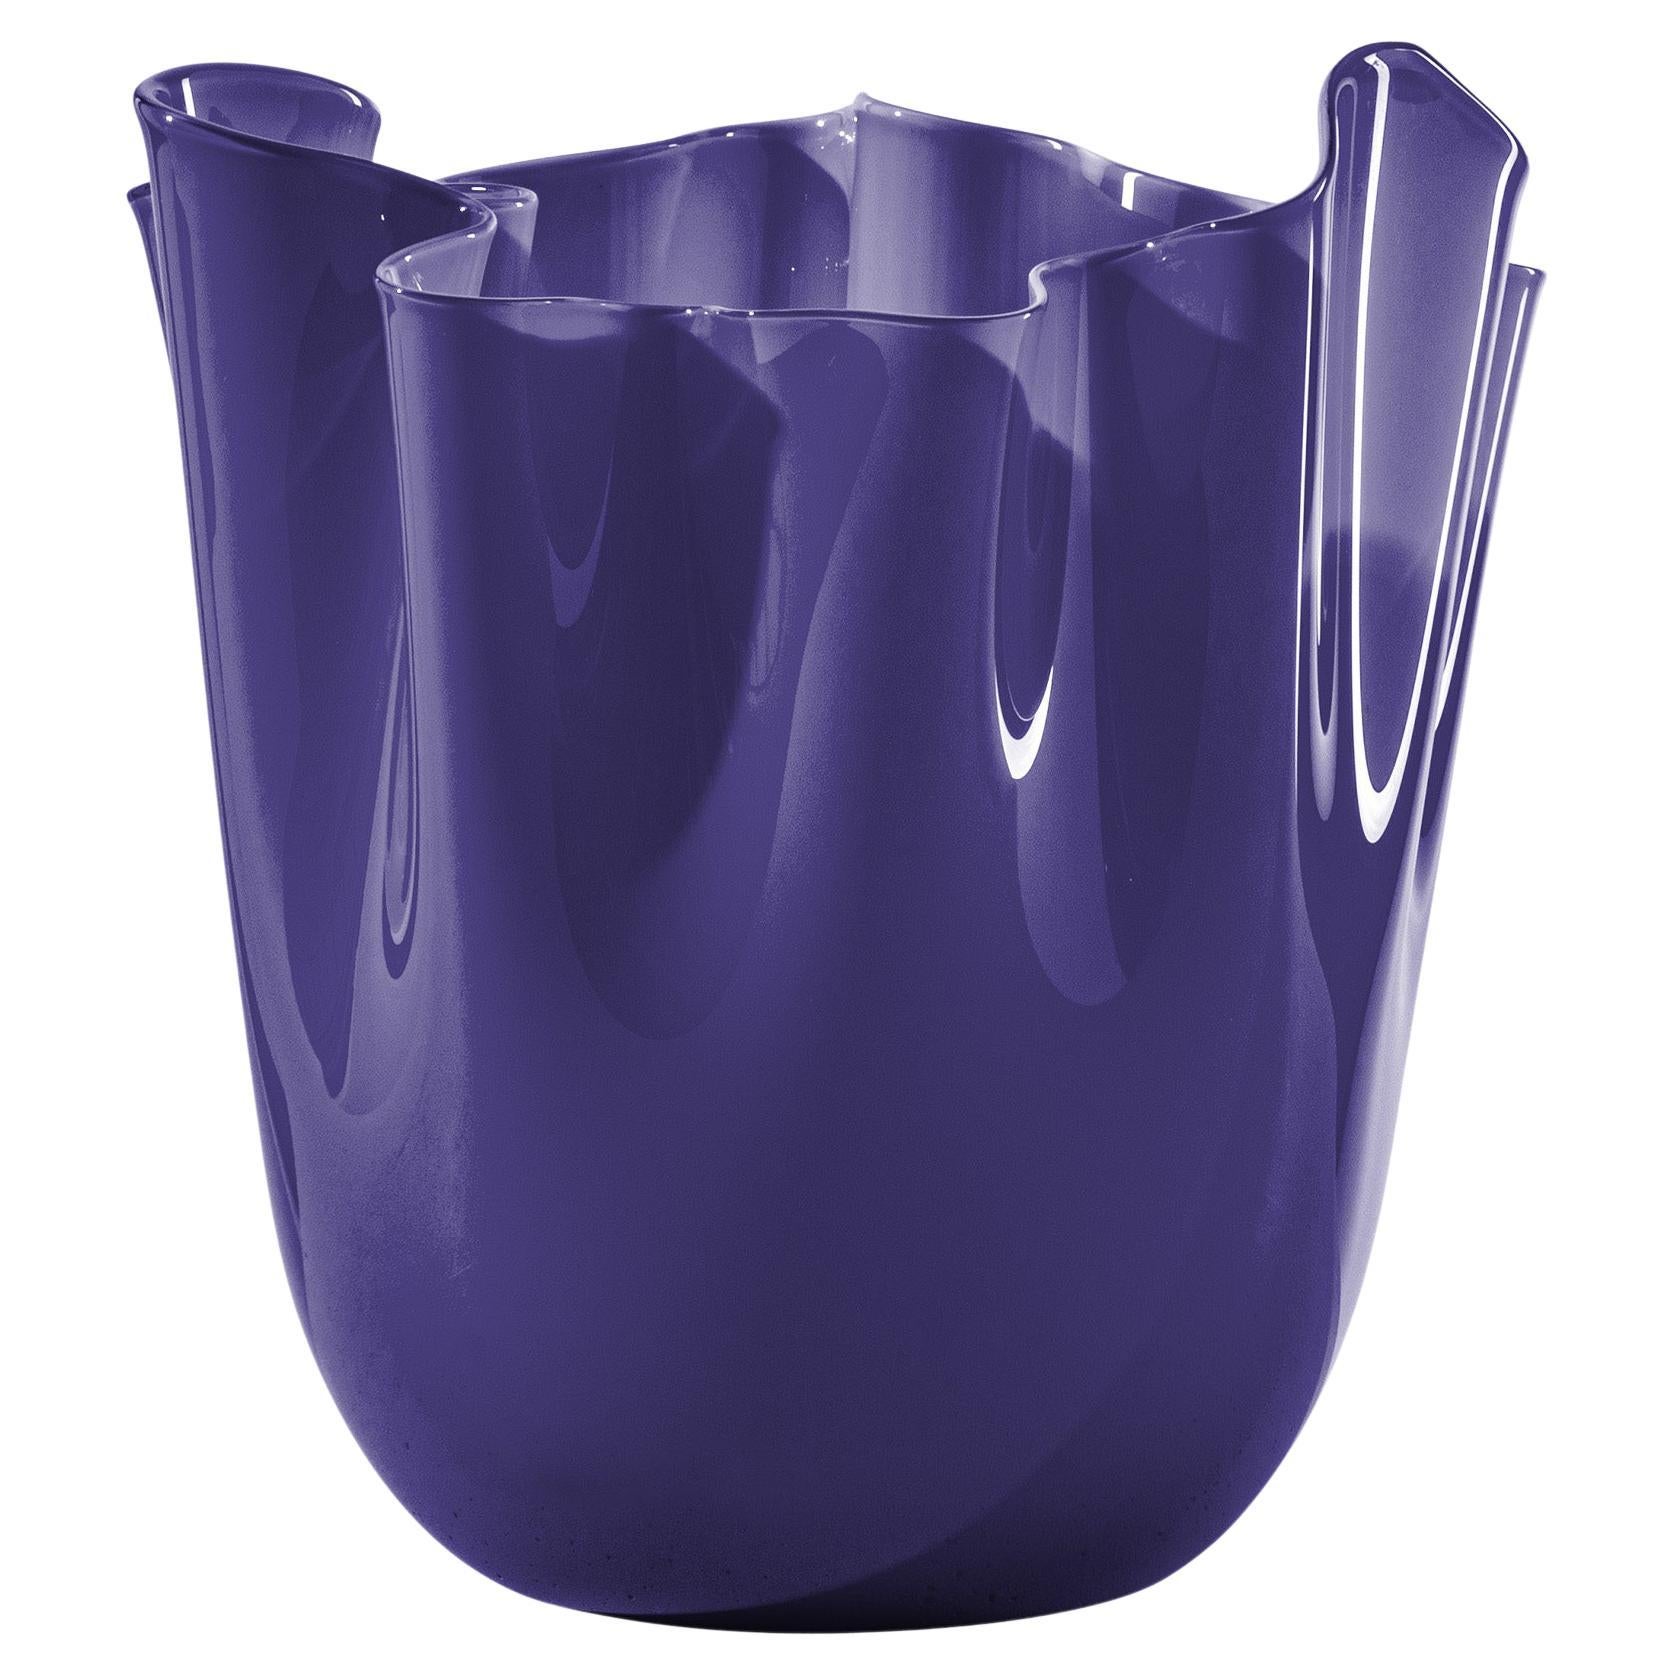 Venini Fazzoletto Opalino Medium Vase in Indigo Murano Glass For Sale